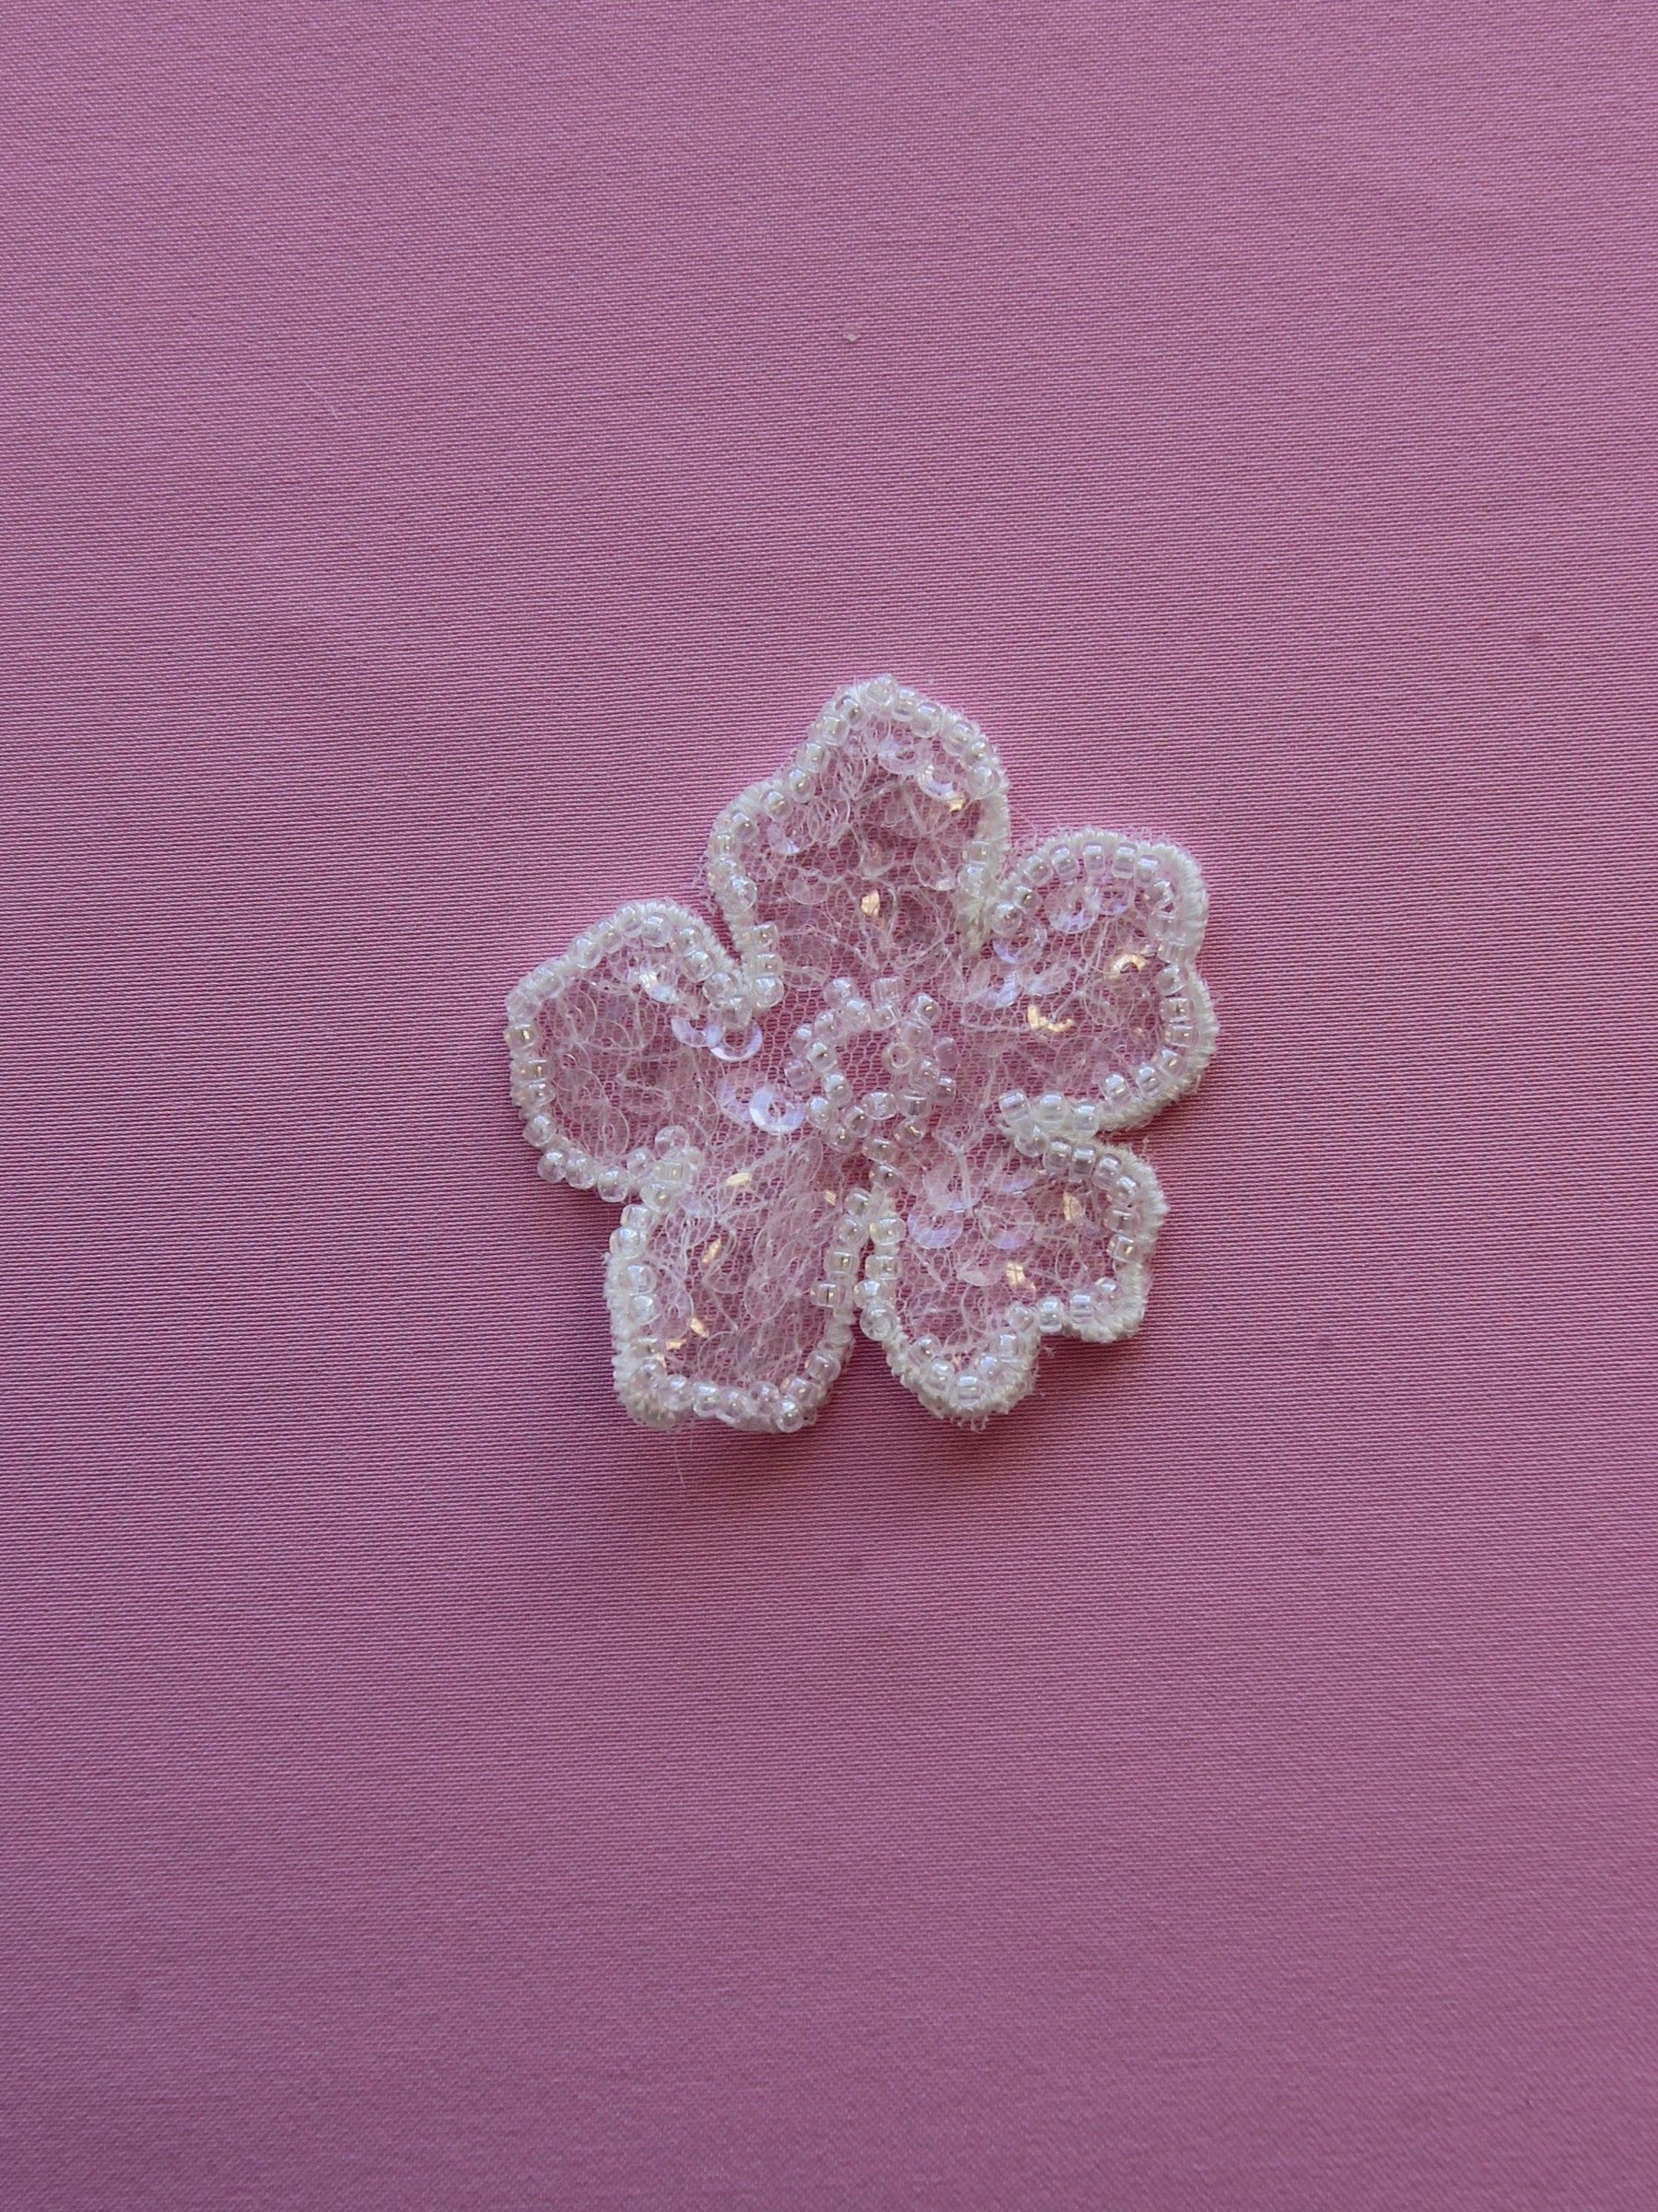 Elfenbeinfarbene Perlenblume – Balsam (Beutel mit 10 Stück)